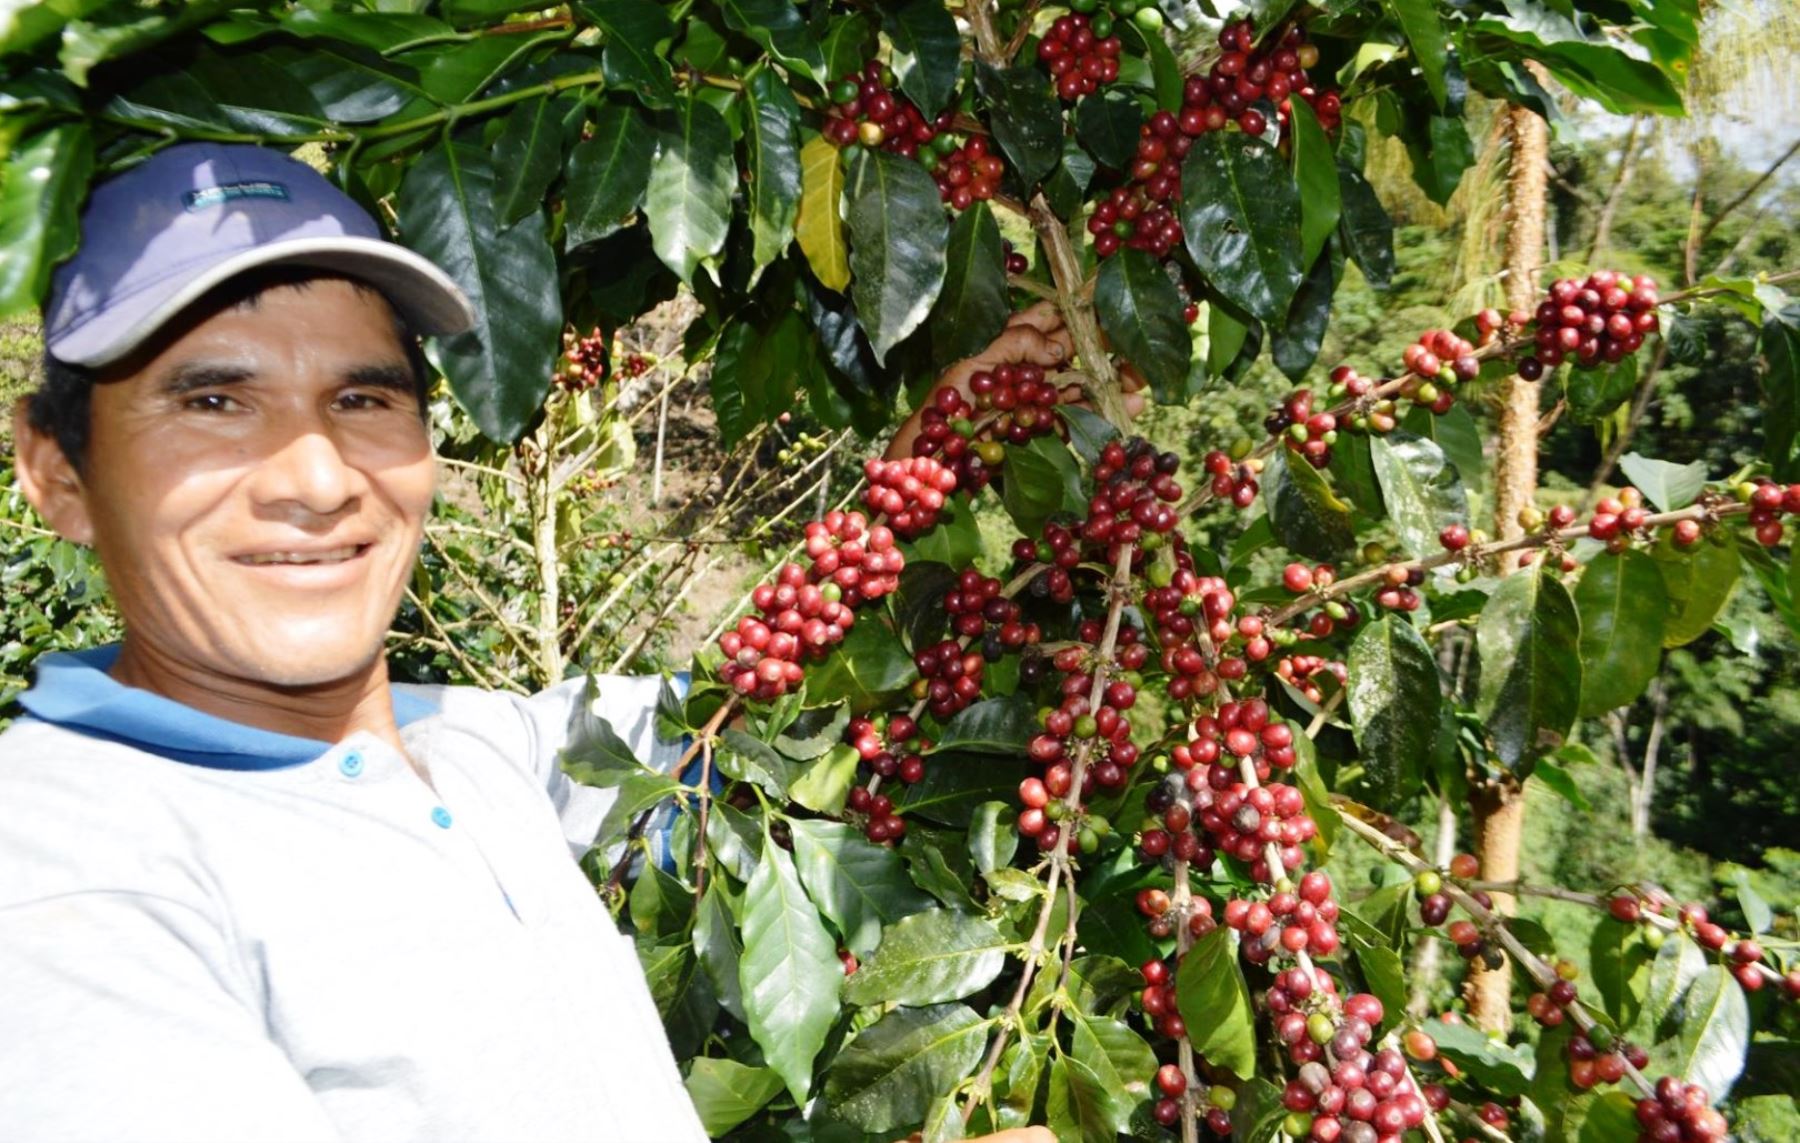 Entidades del Estado resaltan producción de café orgánico en centro poblado Patahuasi, zona ubicada en el Vraem.